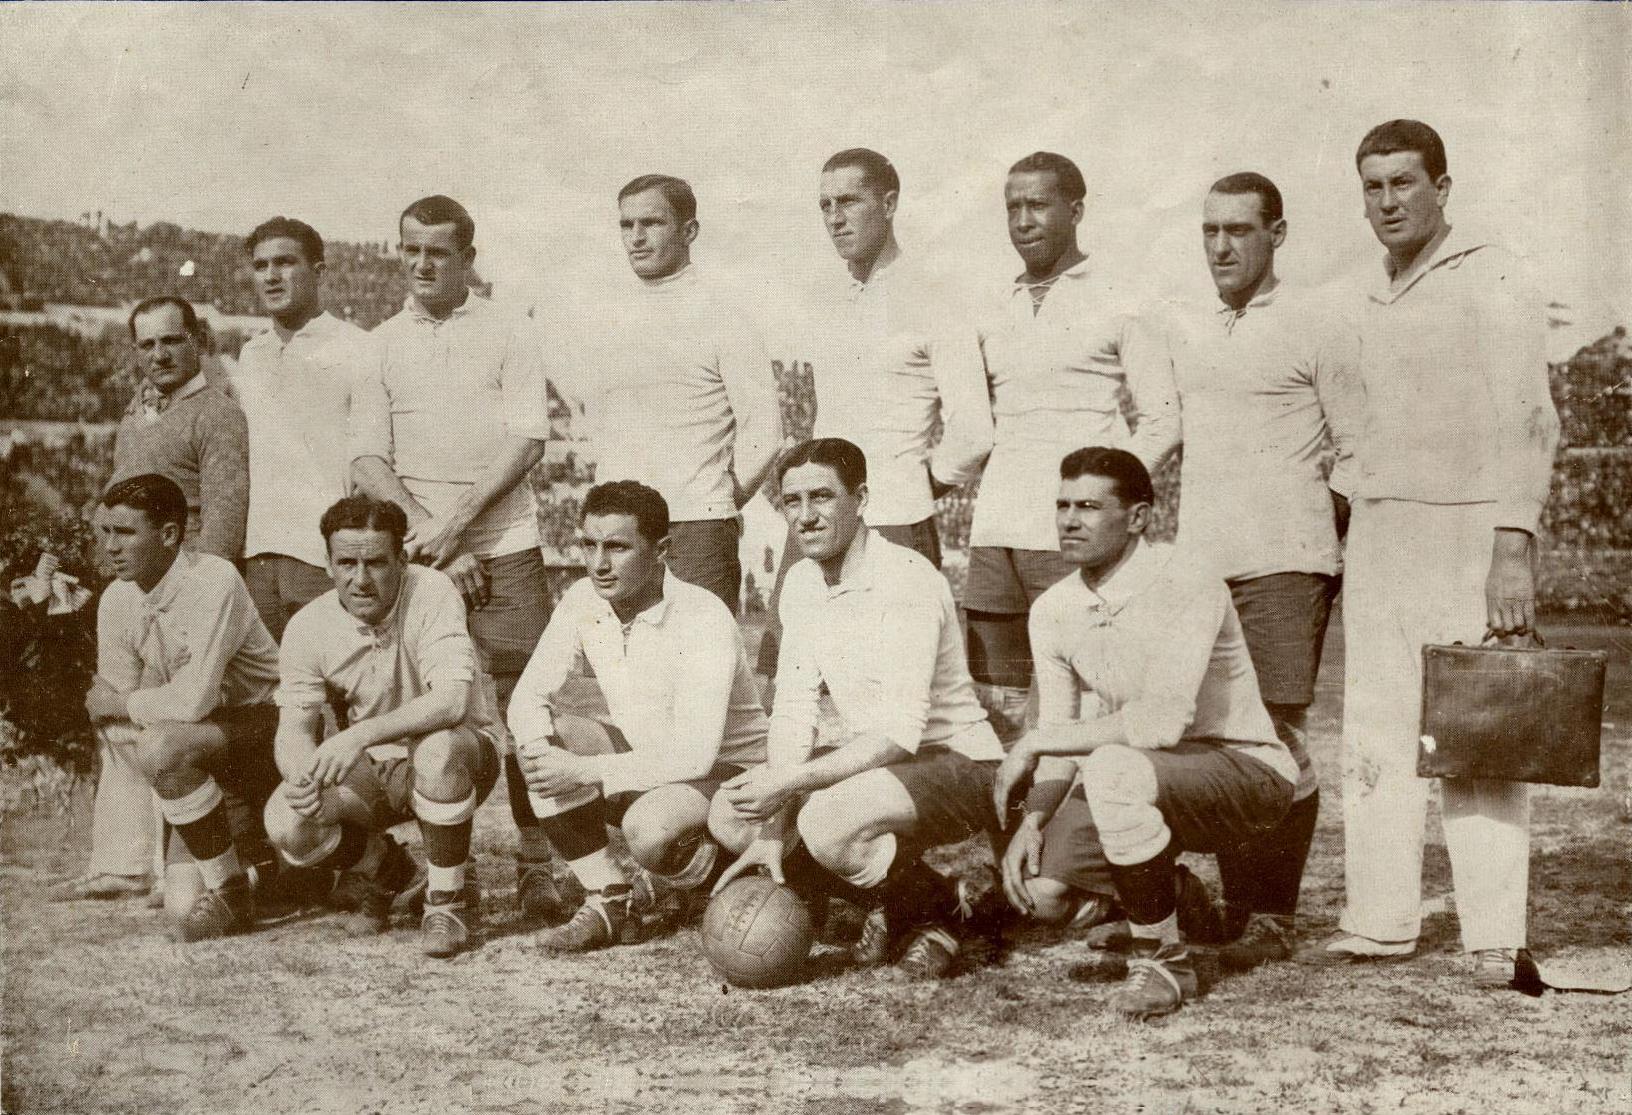 1930年第一届世界杯冠军国家乌拉圭球队